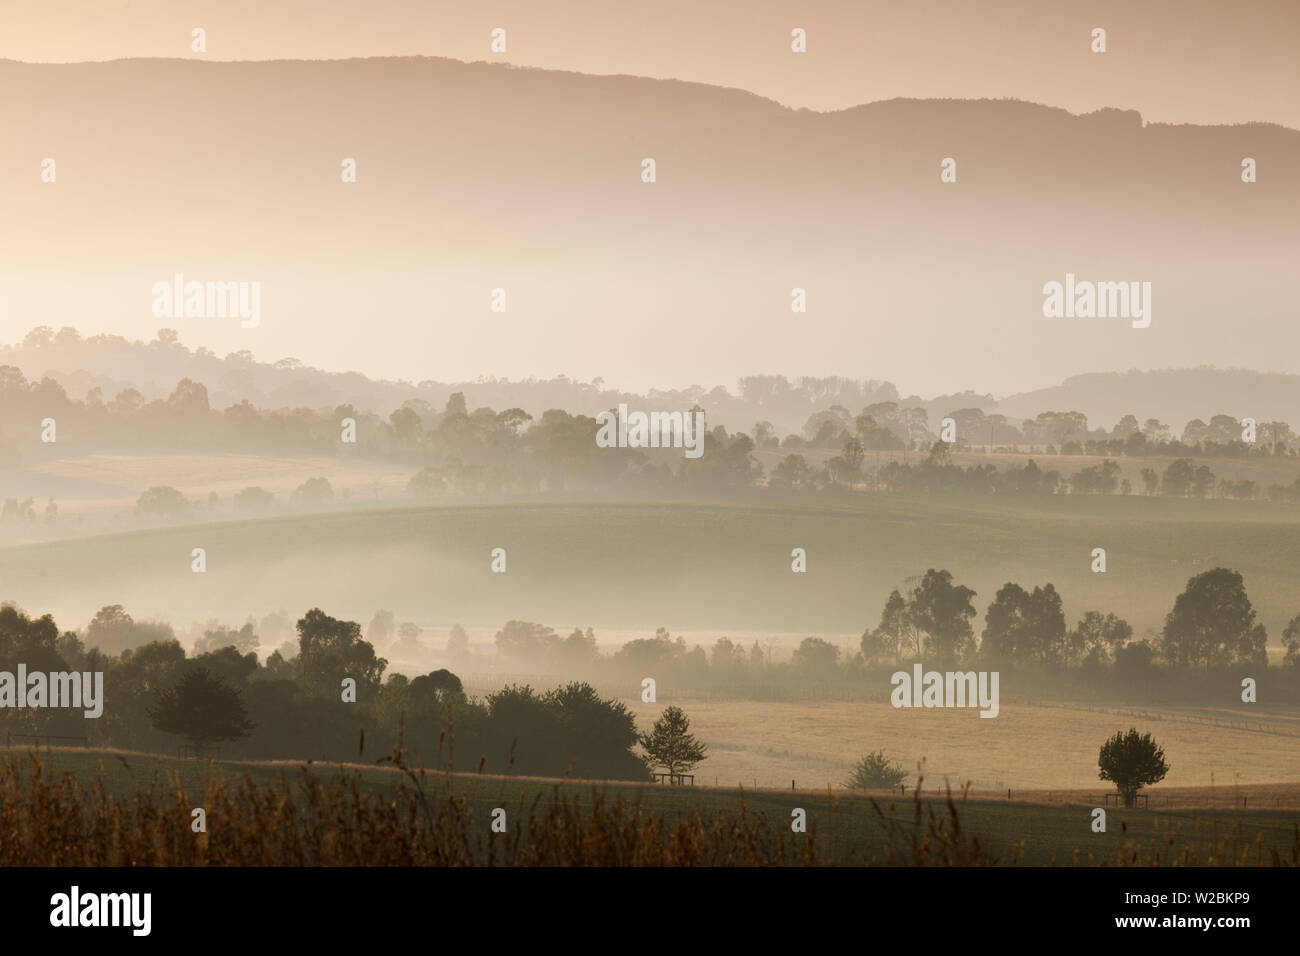 Australia, Victoria, VIC, Yarra Valley, landscape, dawn Stock Photo